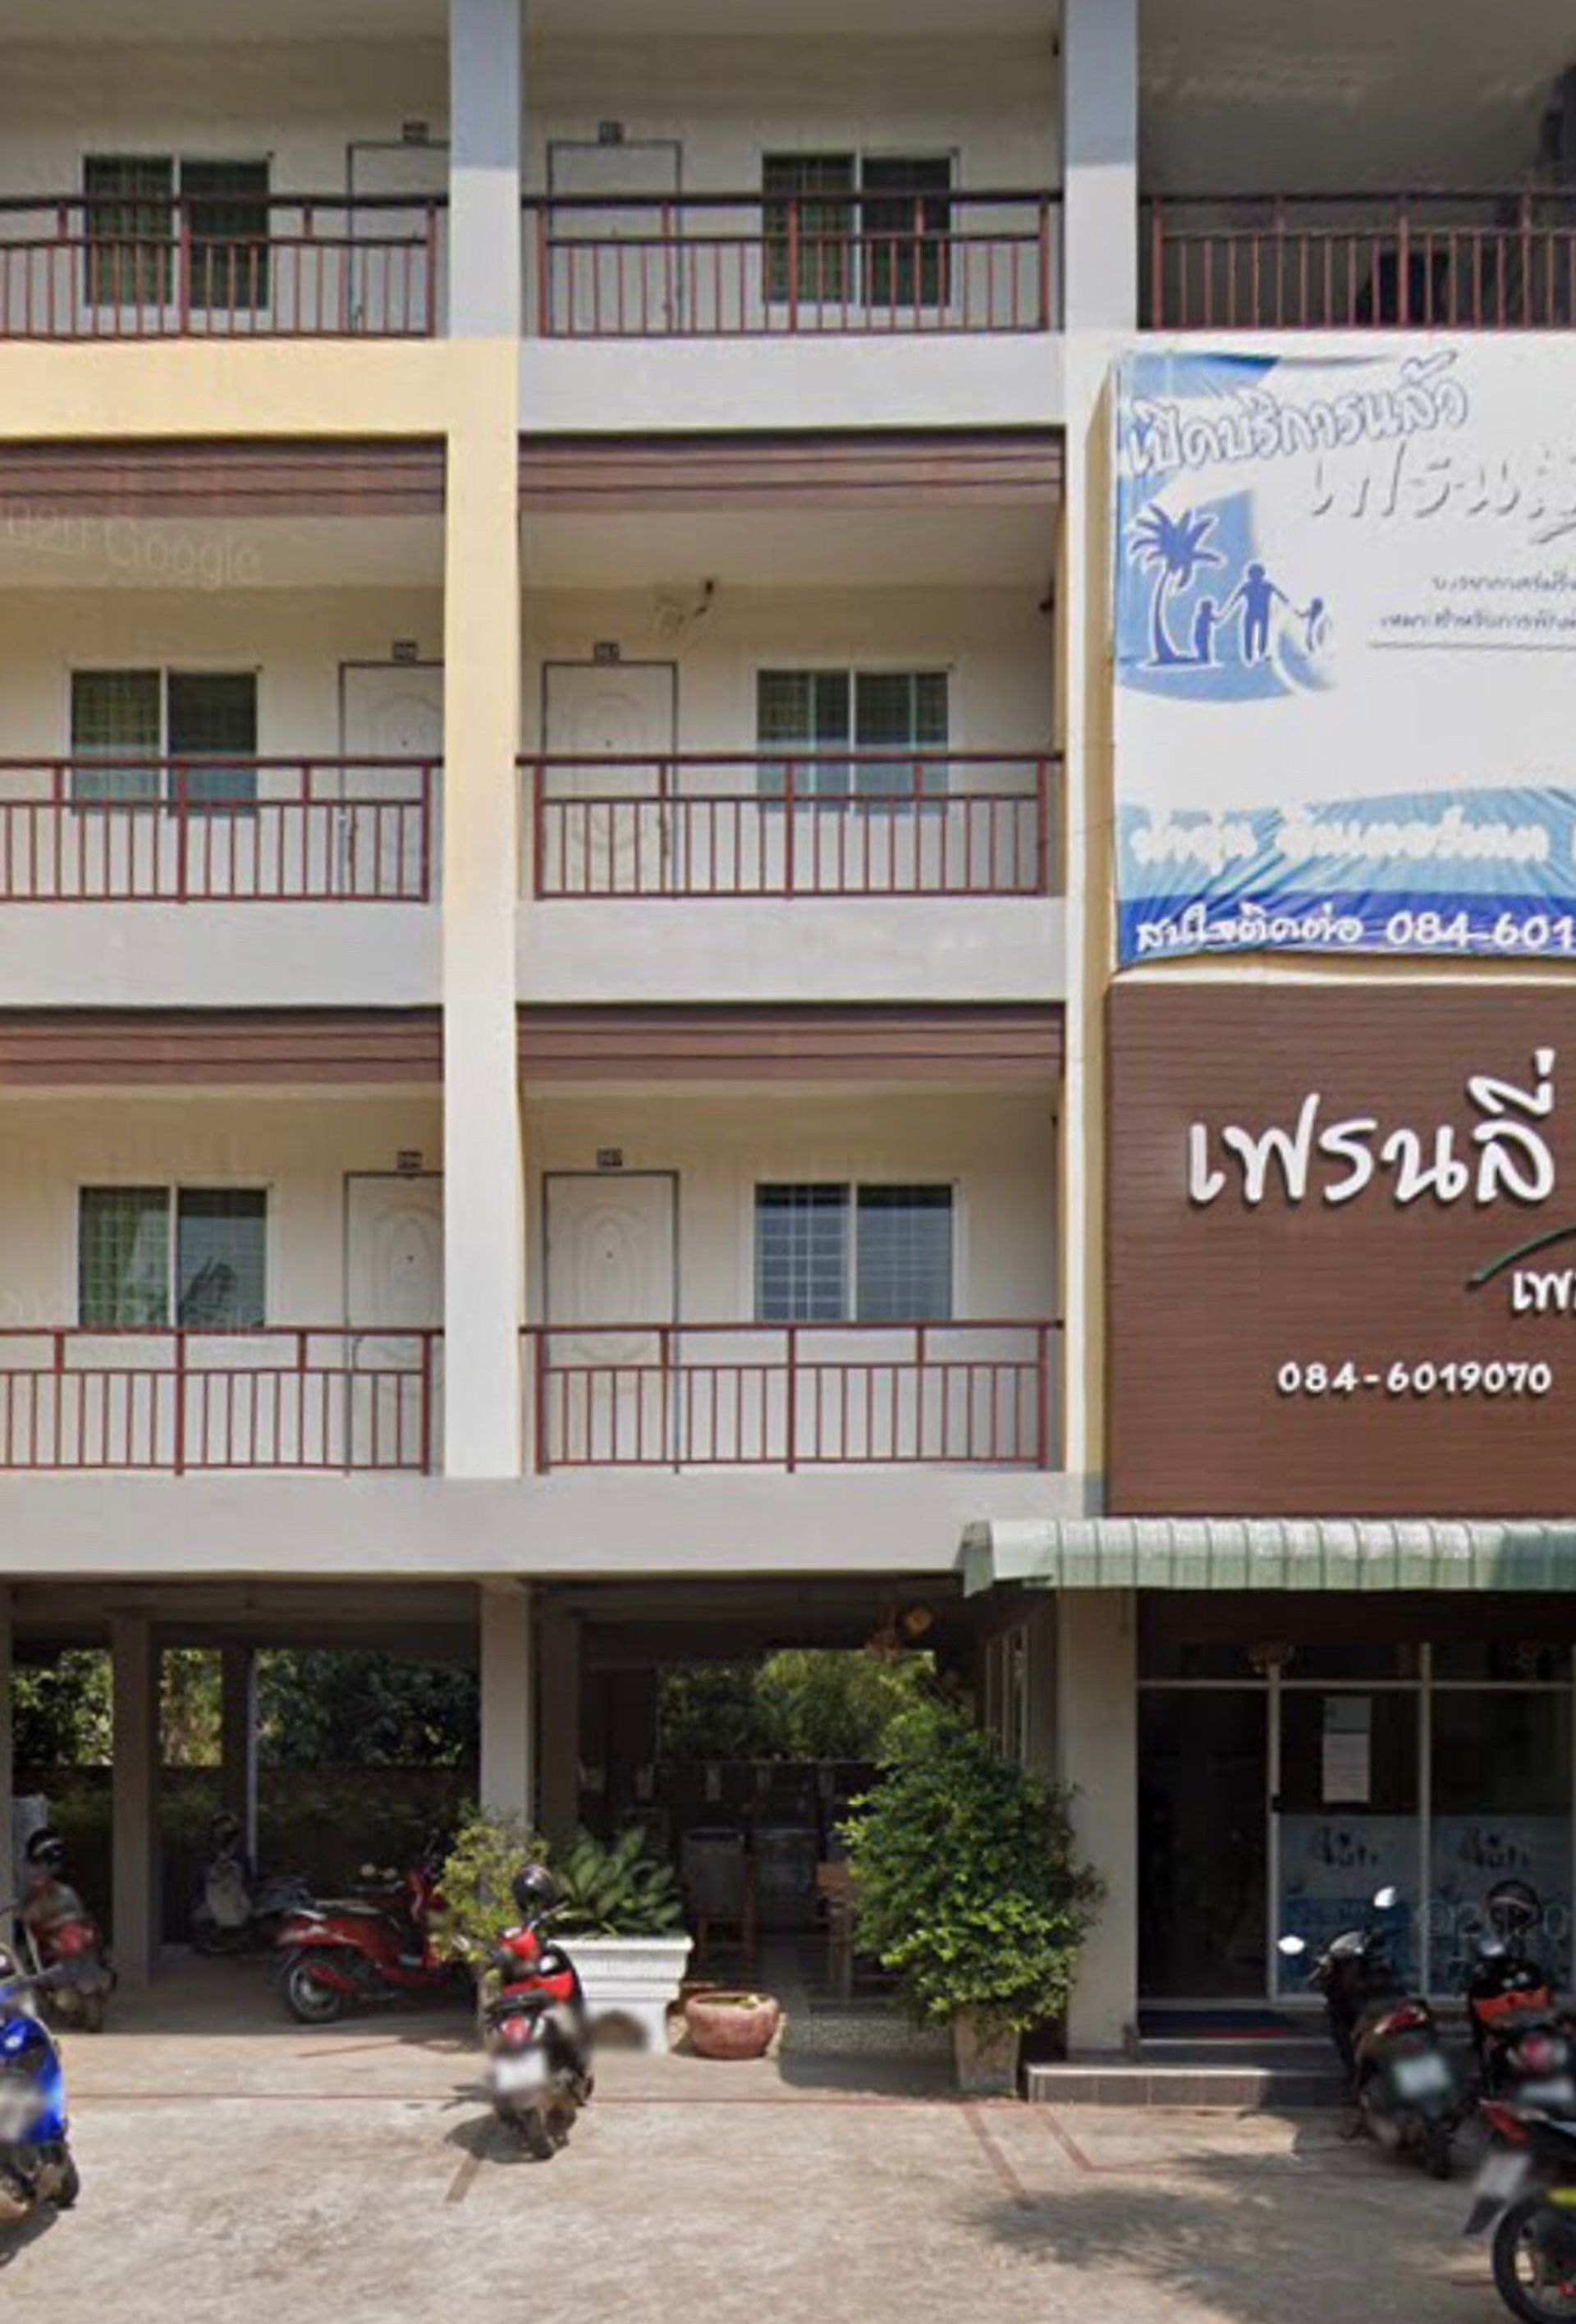 รูปภาพปก เฟรนลี่เพลส-ขอนแก่น - Friendly-place-Khon-Kaen-หอพักกังสดาล-หอพักขอนแก่น